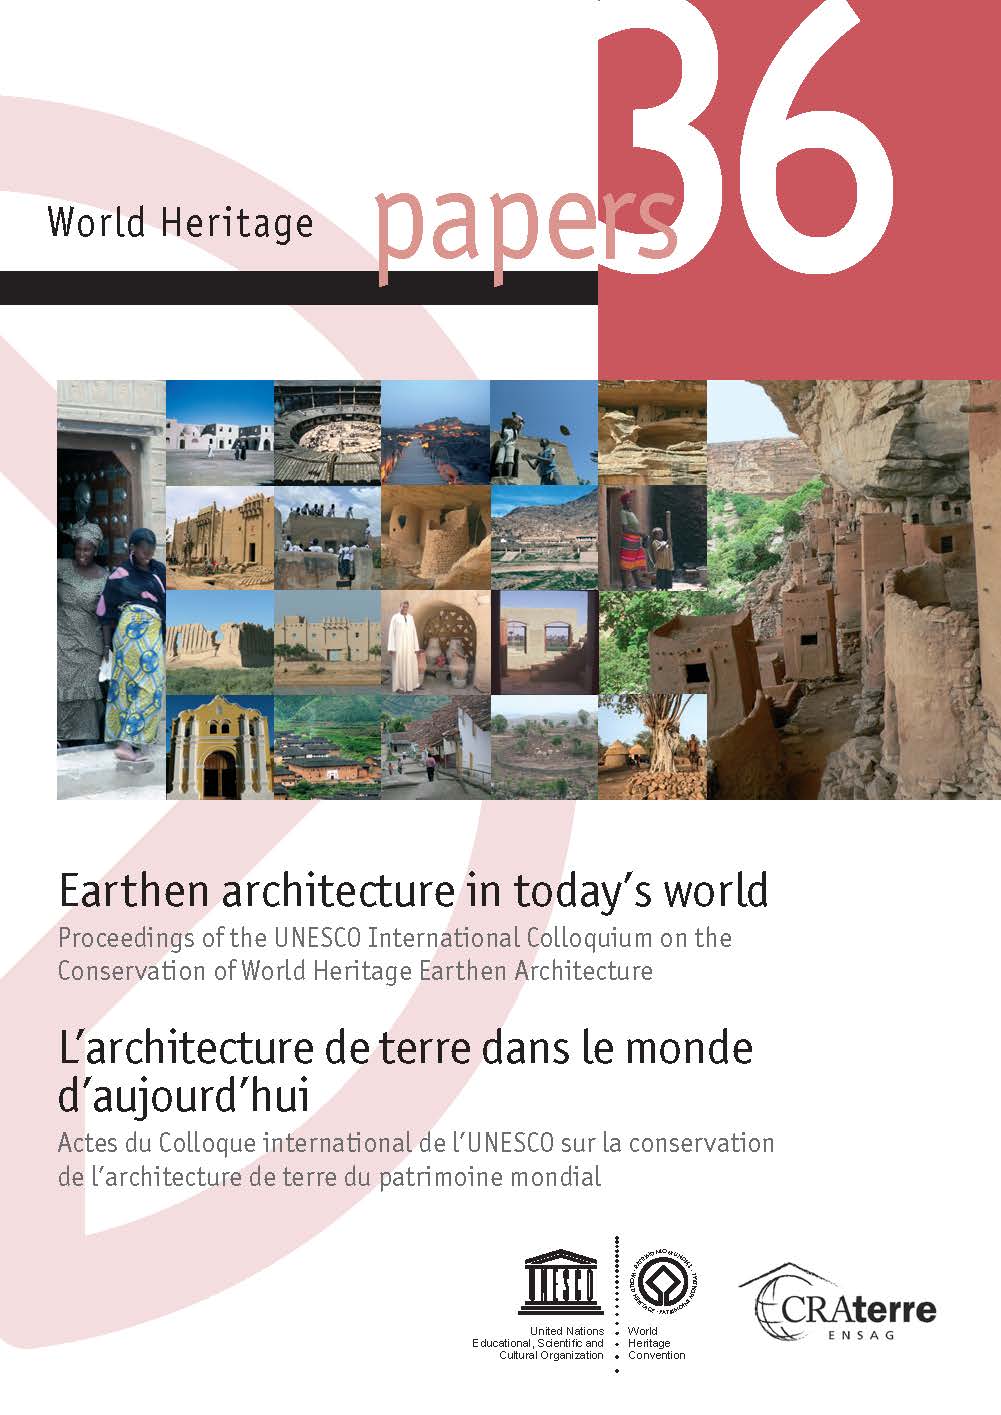 WHC: Paper Series